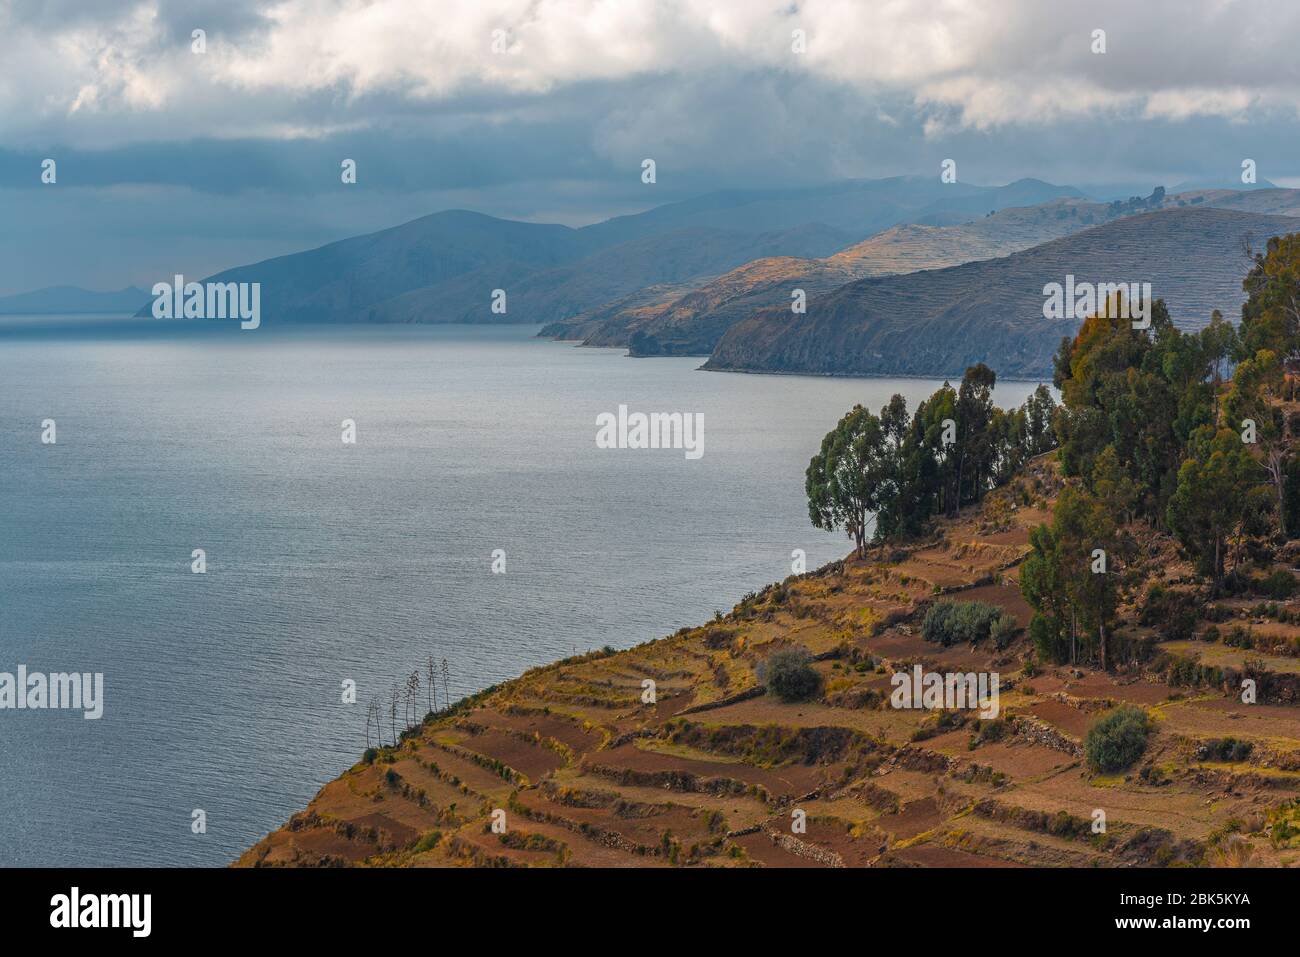 Paysage de l'île Sun (Isla del sol) près du lac Titicaca, Bolivie. Banque D'Images